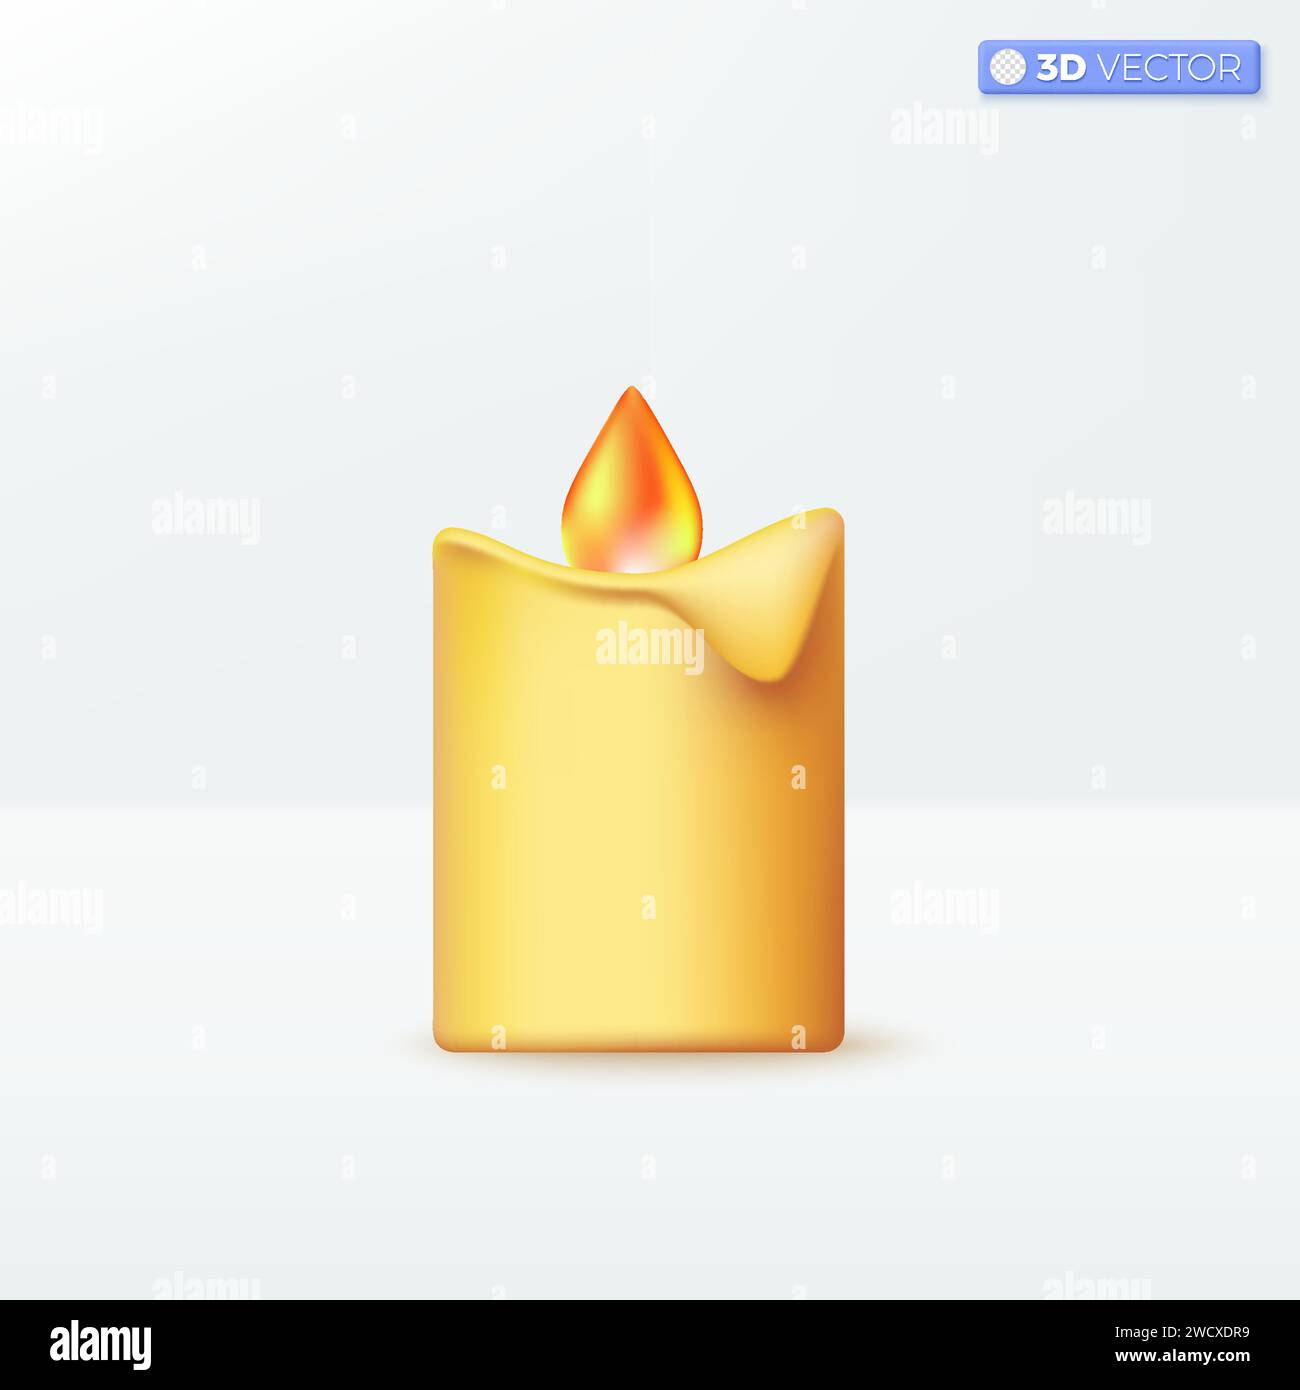 3D realistisches Symbol für Kerzenbrand, Nacht- und Weihnachtsdekoration. Wachsflammenzeremonie und weihnachtsmeditationskonzept. 3D-Vektor isolierte Illustraten Stock Vektor